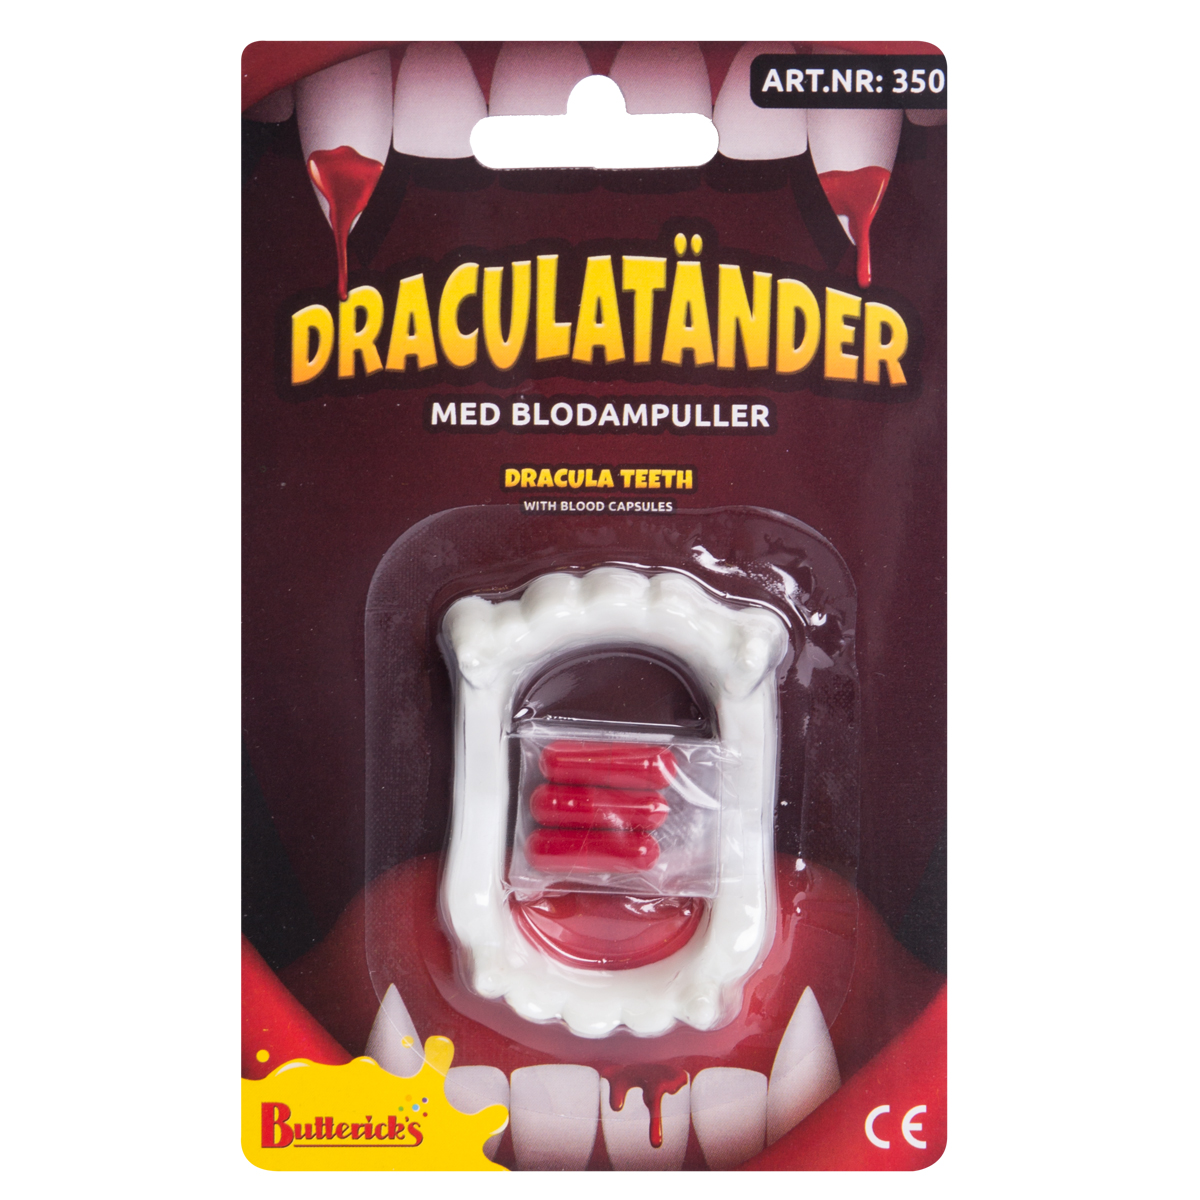 Draculatänder med blodampullerproduktzoombild #3